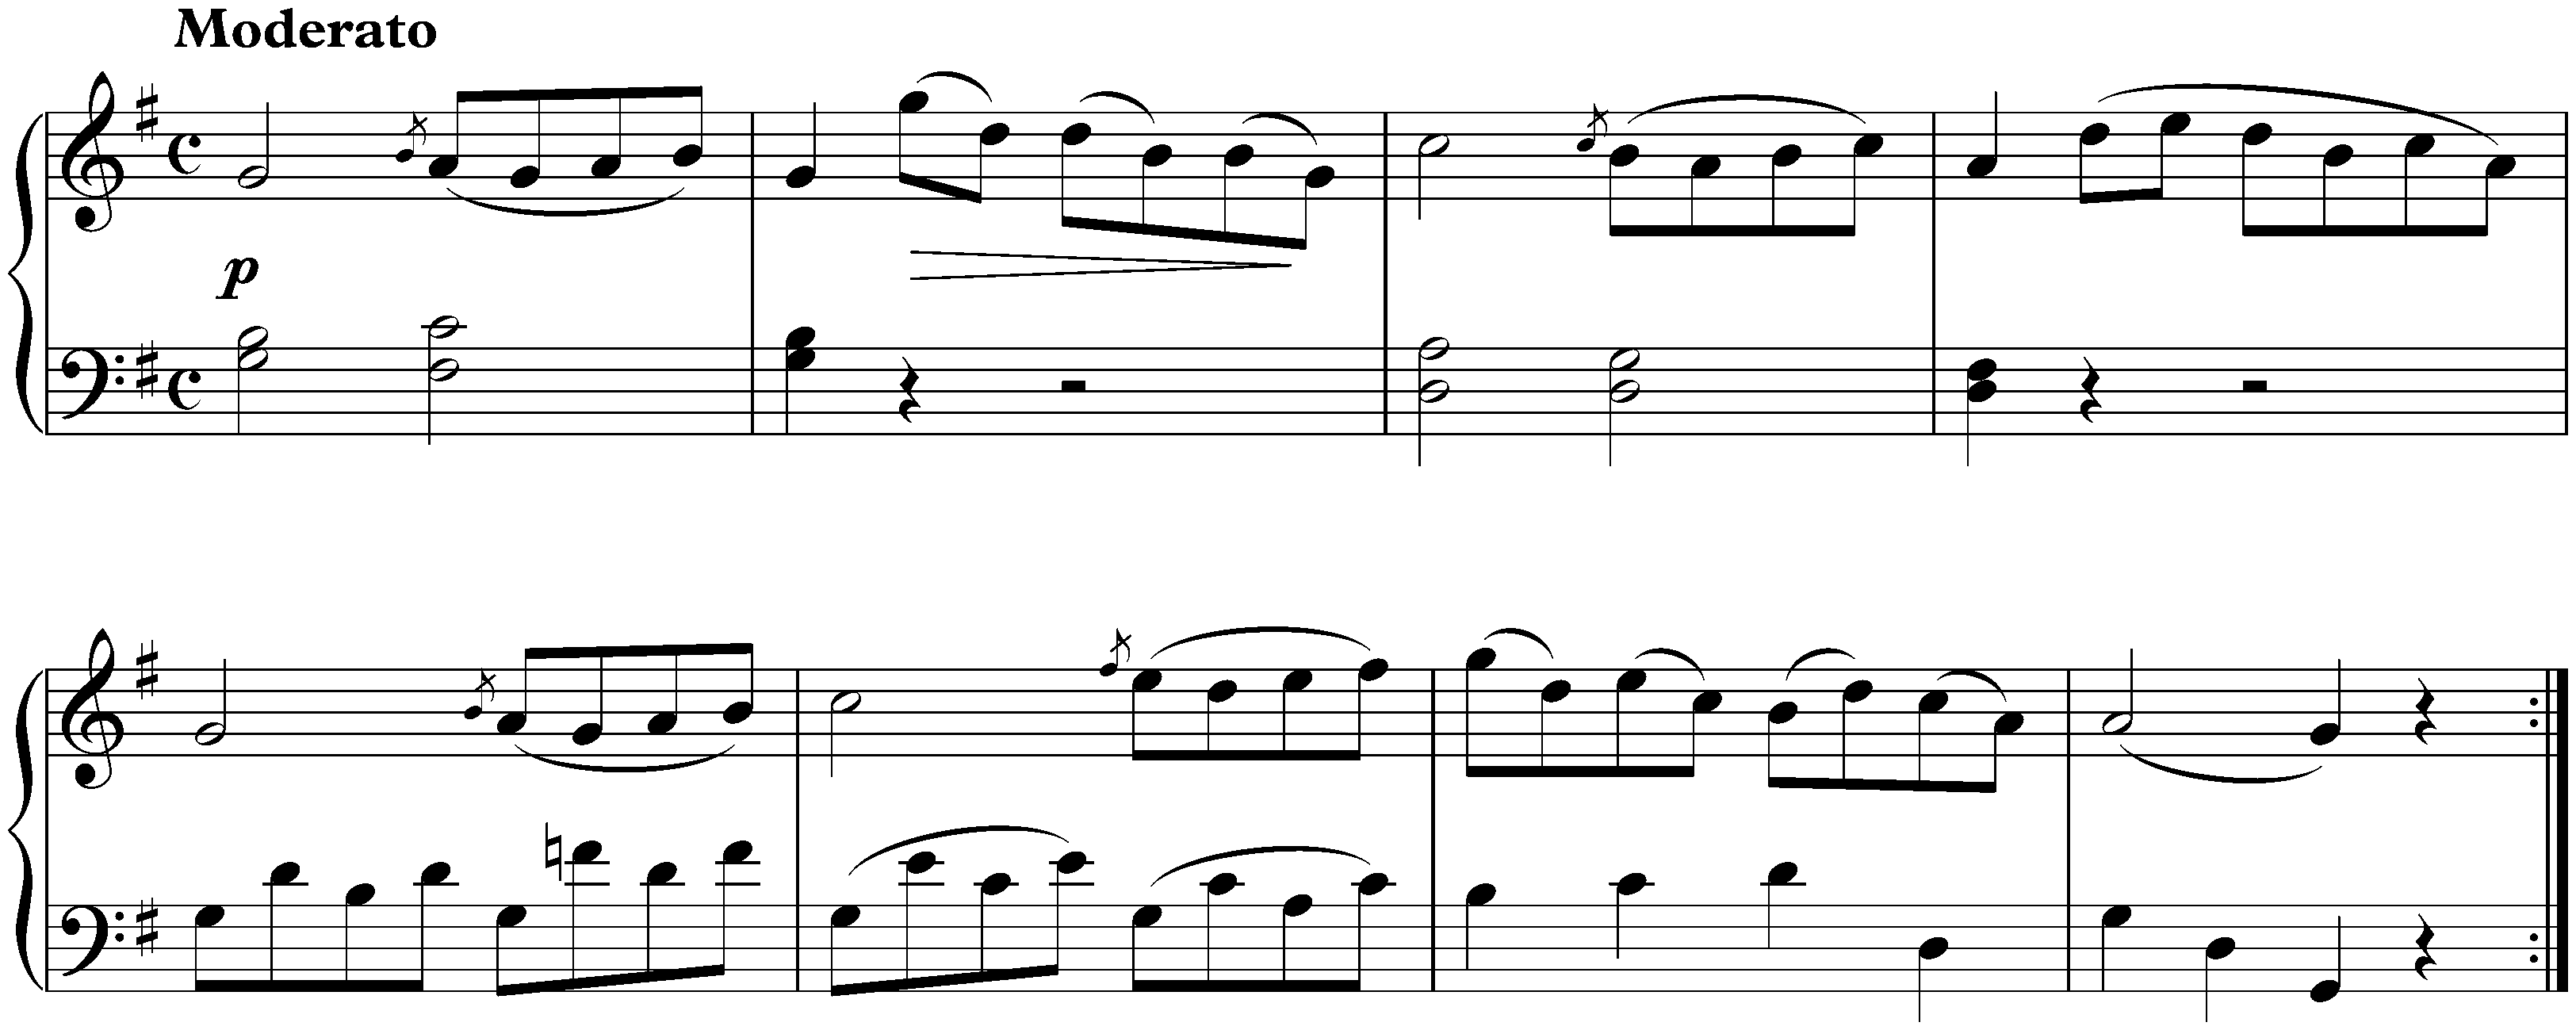 Sonatina in G major, Anh. 5 no. 1; 1. Moderato